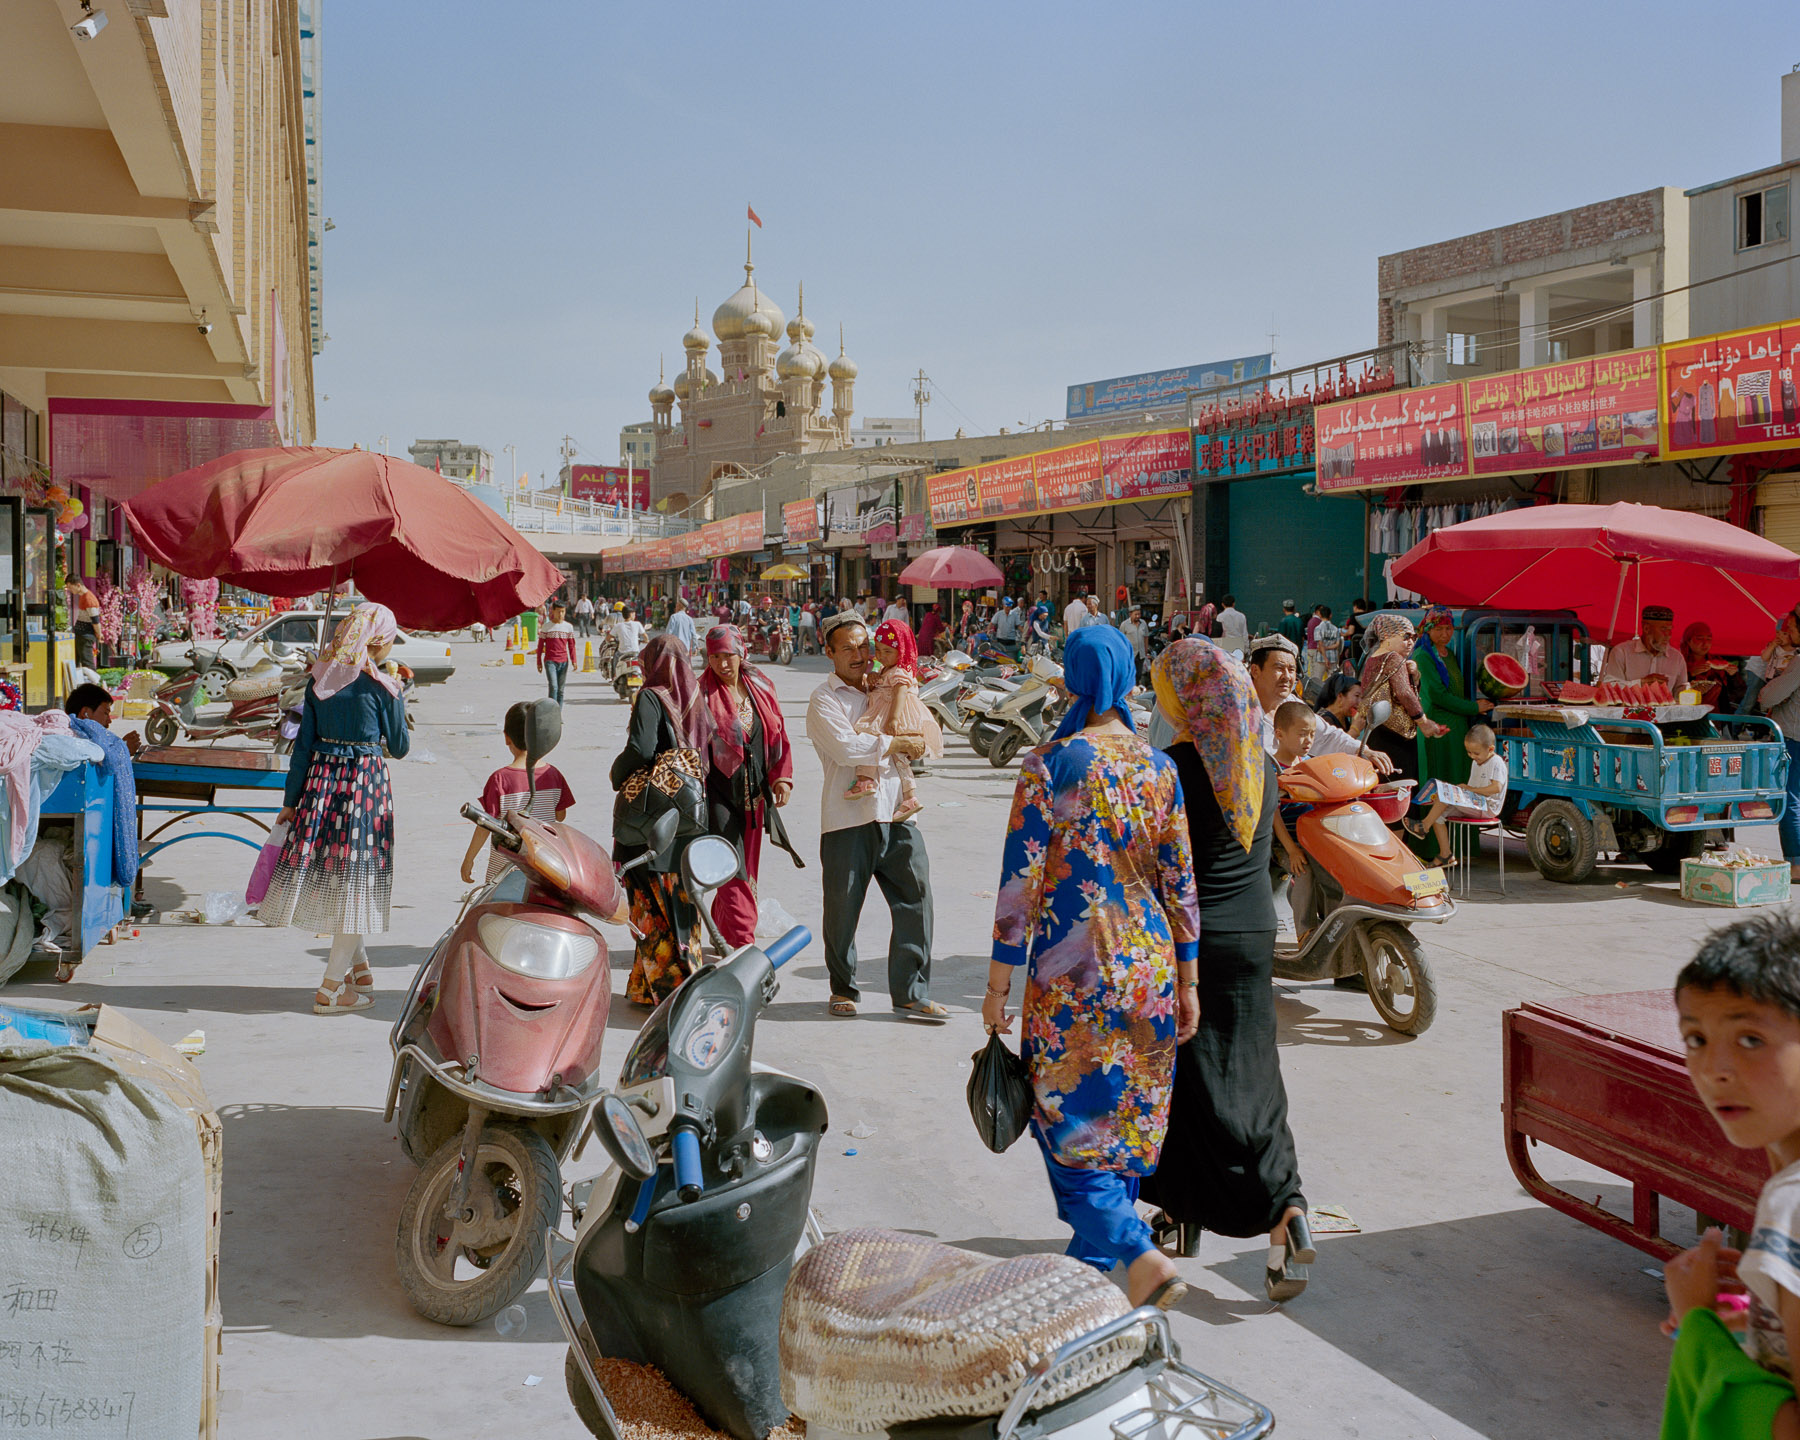  May 2016. Xinjiang province, China. The bazaar of Hotan. 